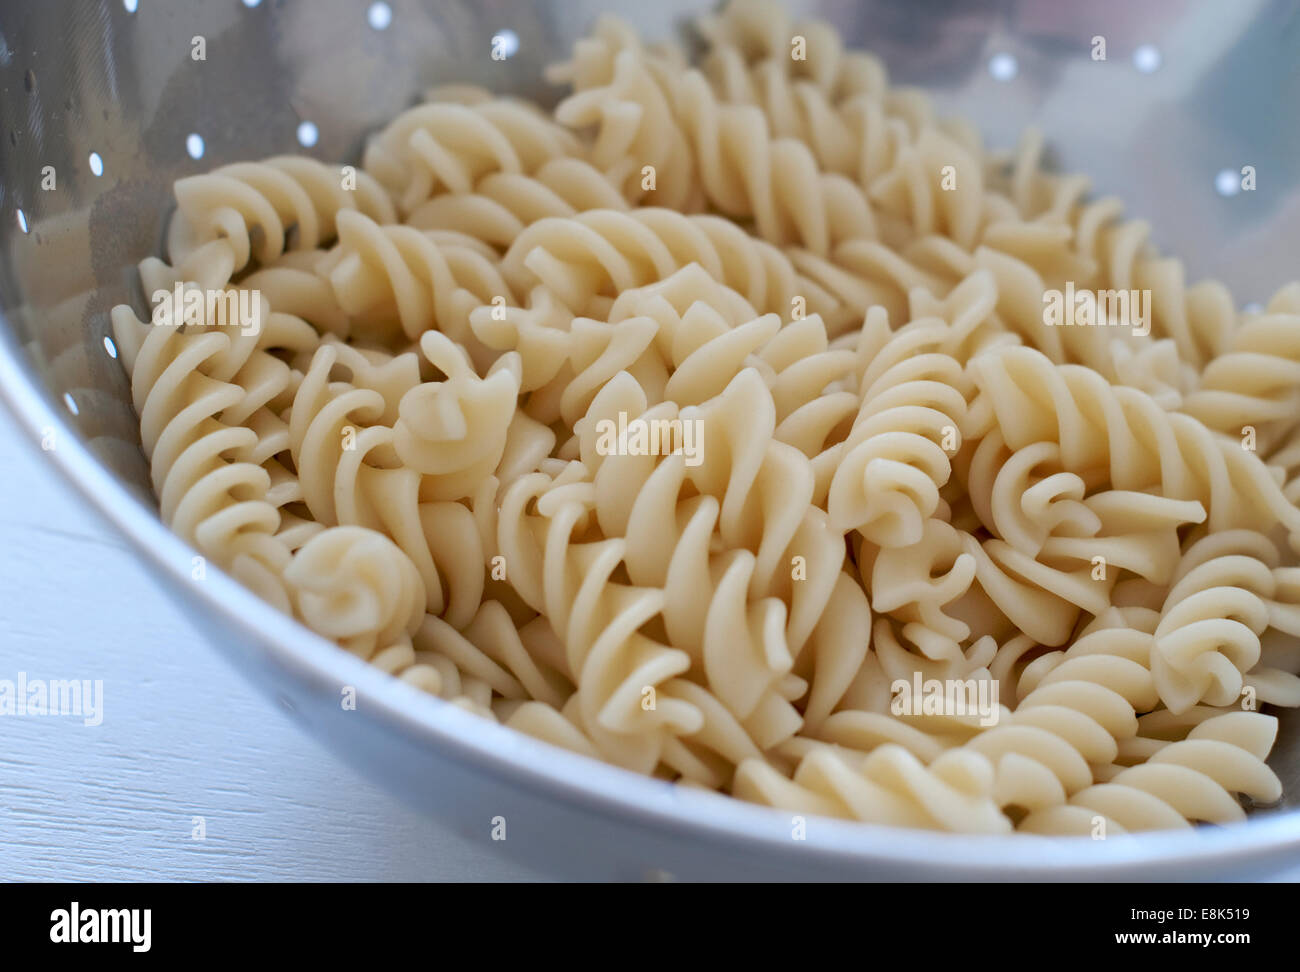 Still Life food immagine della pasta in uno scolapasta Foto Stock